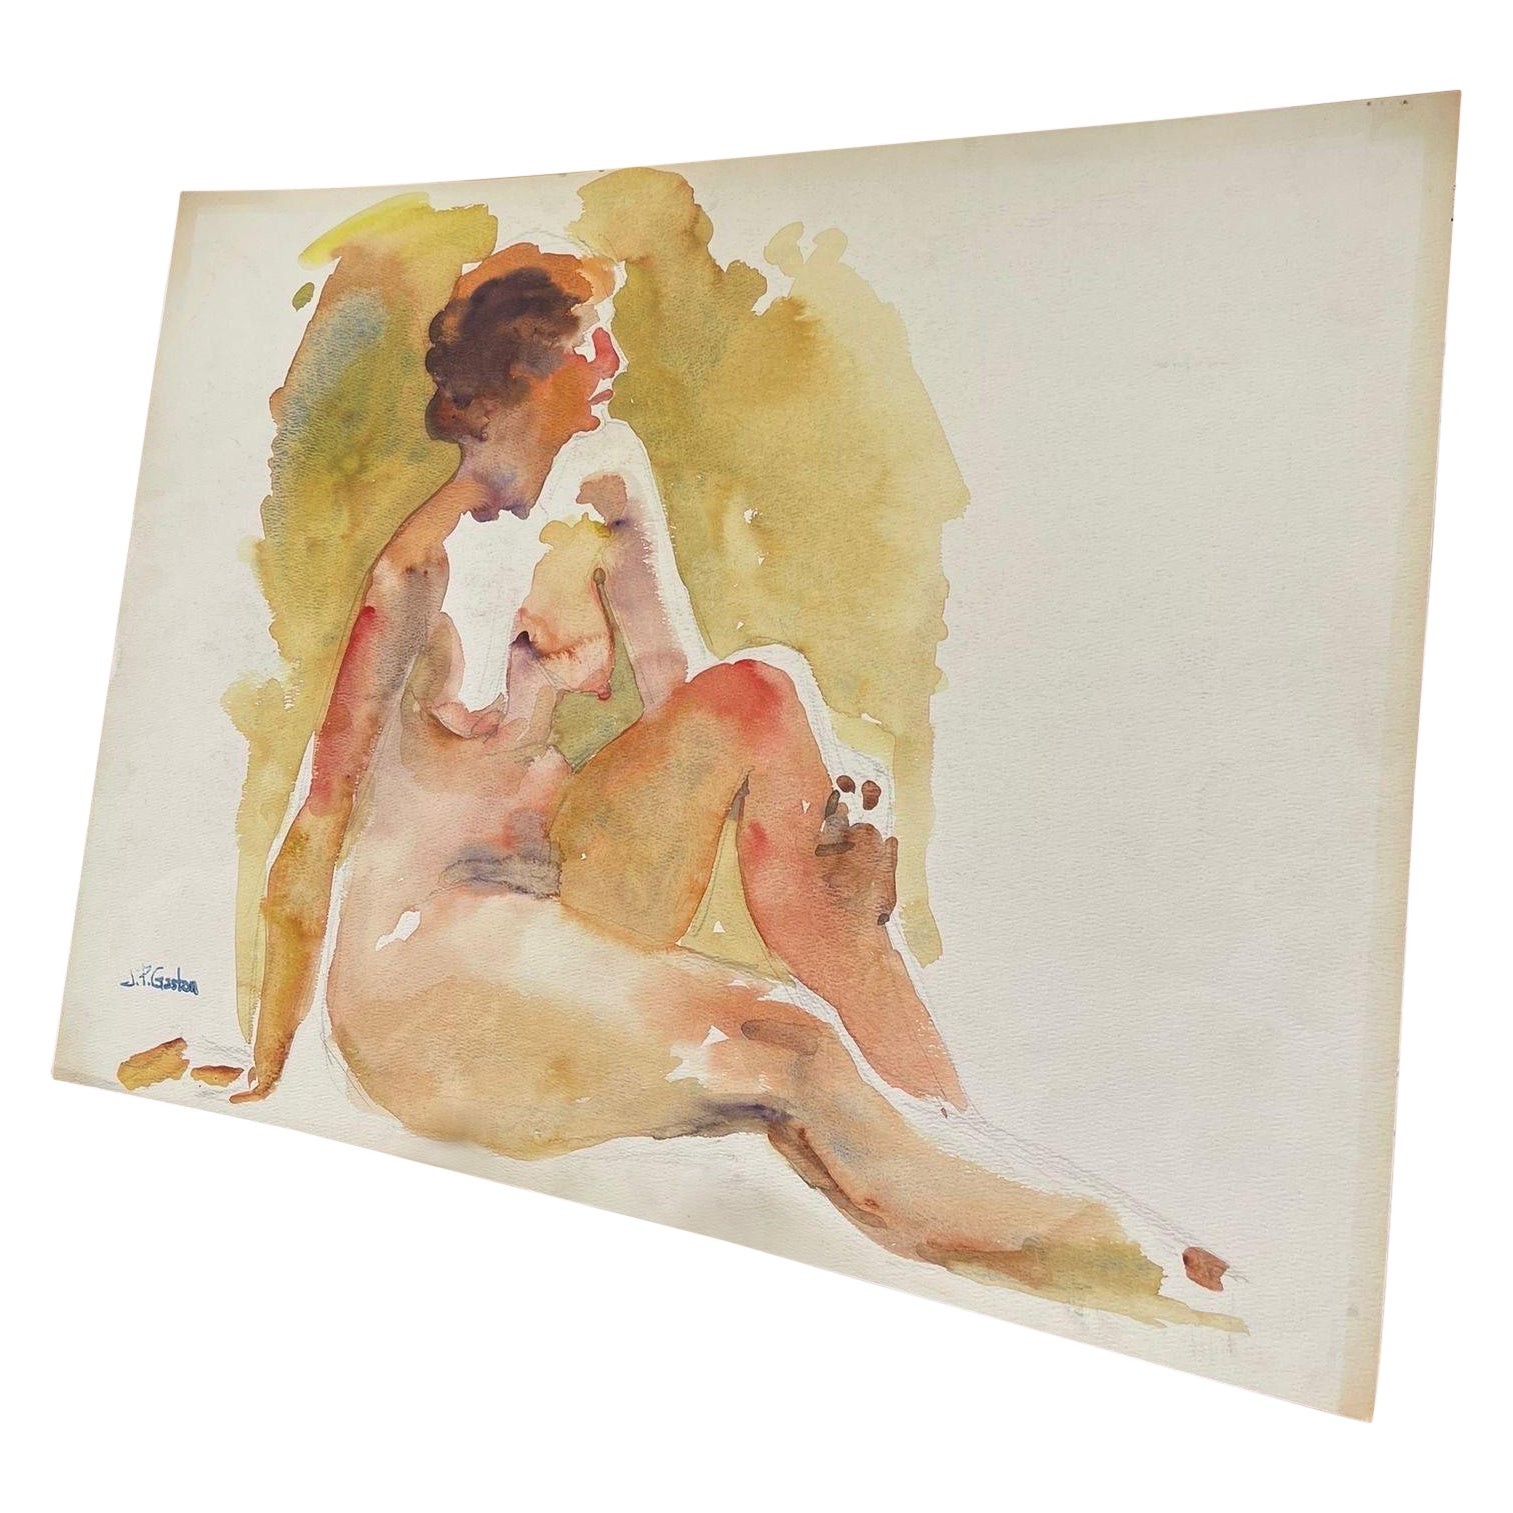 Portrait de femme nue abstrait, peut-être aquarelle sur papier avec crayon